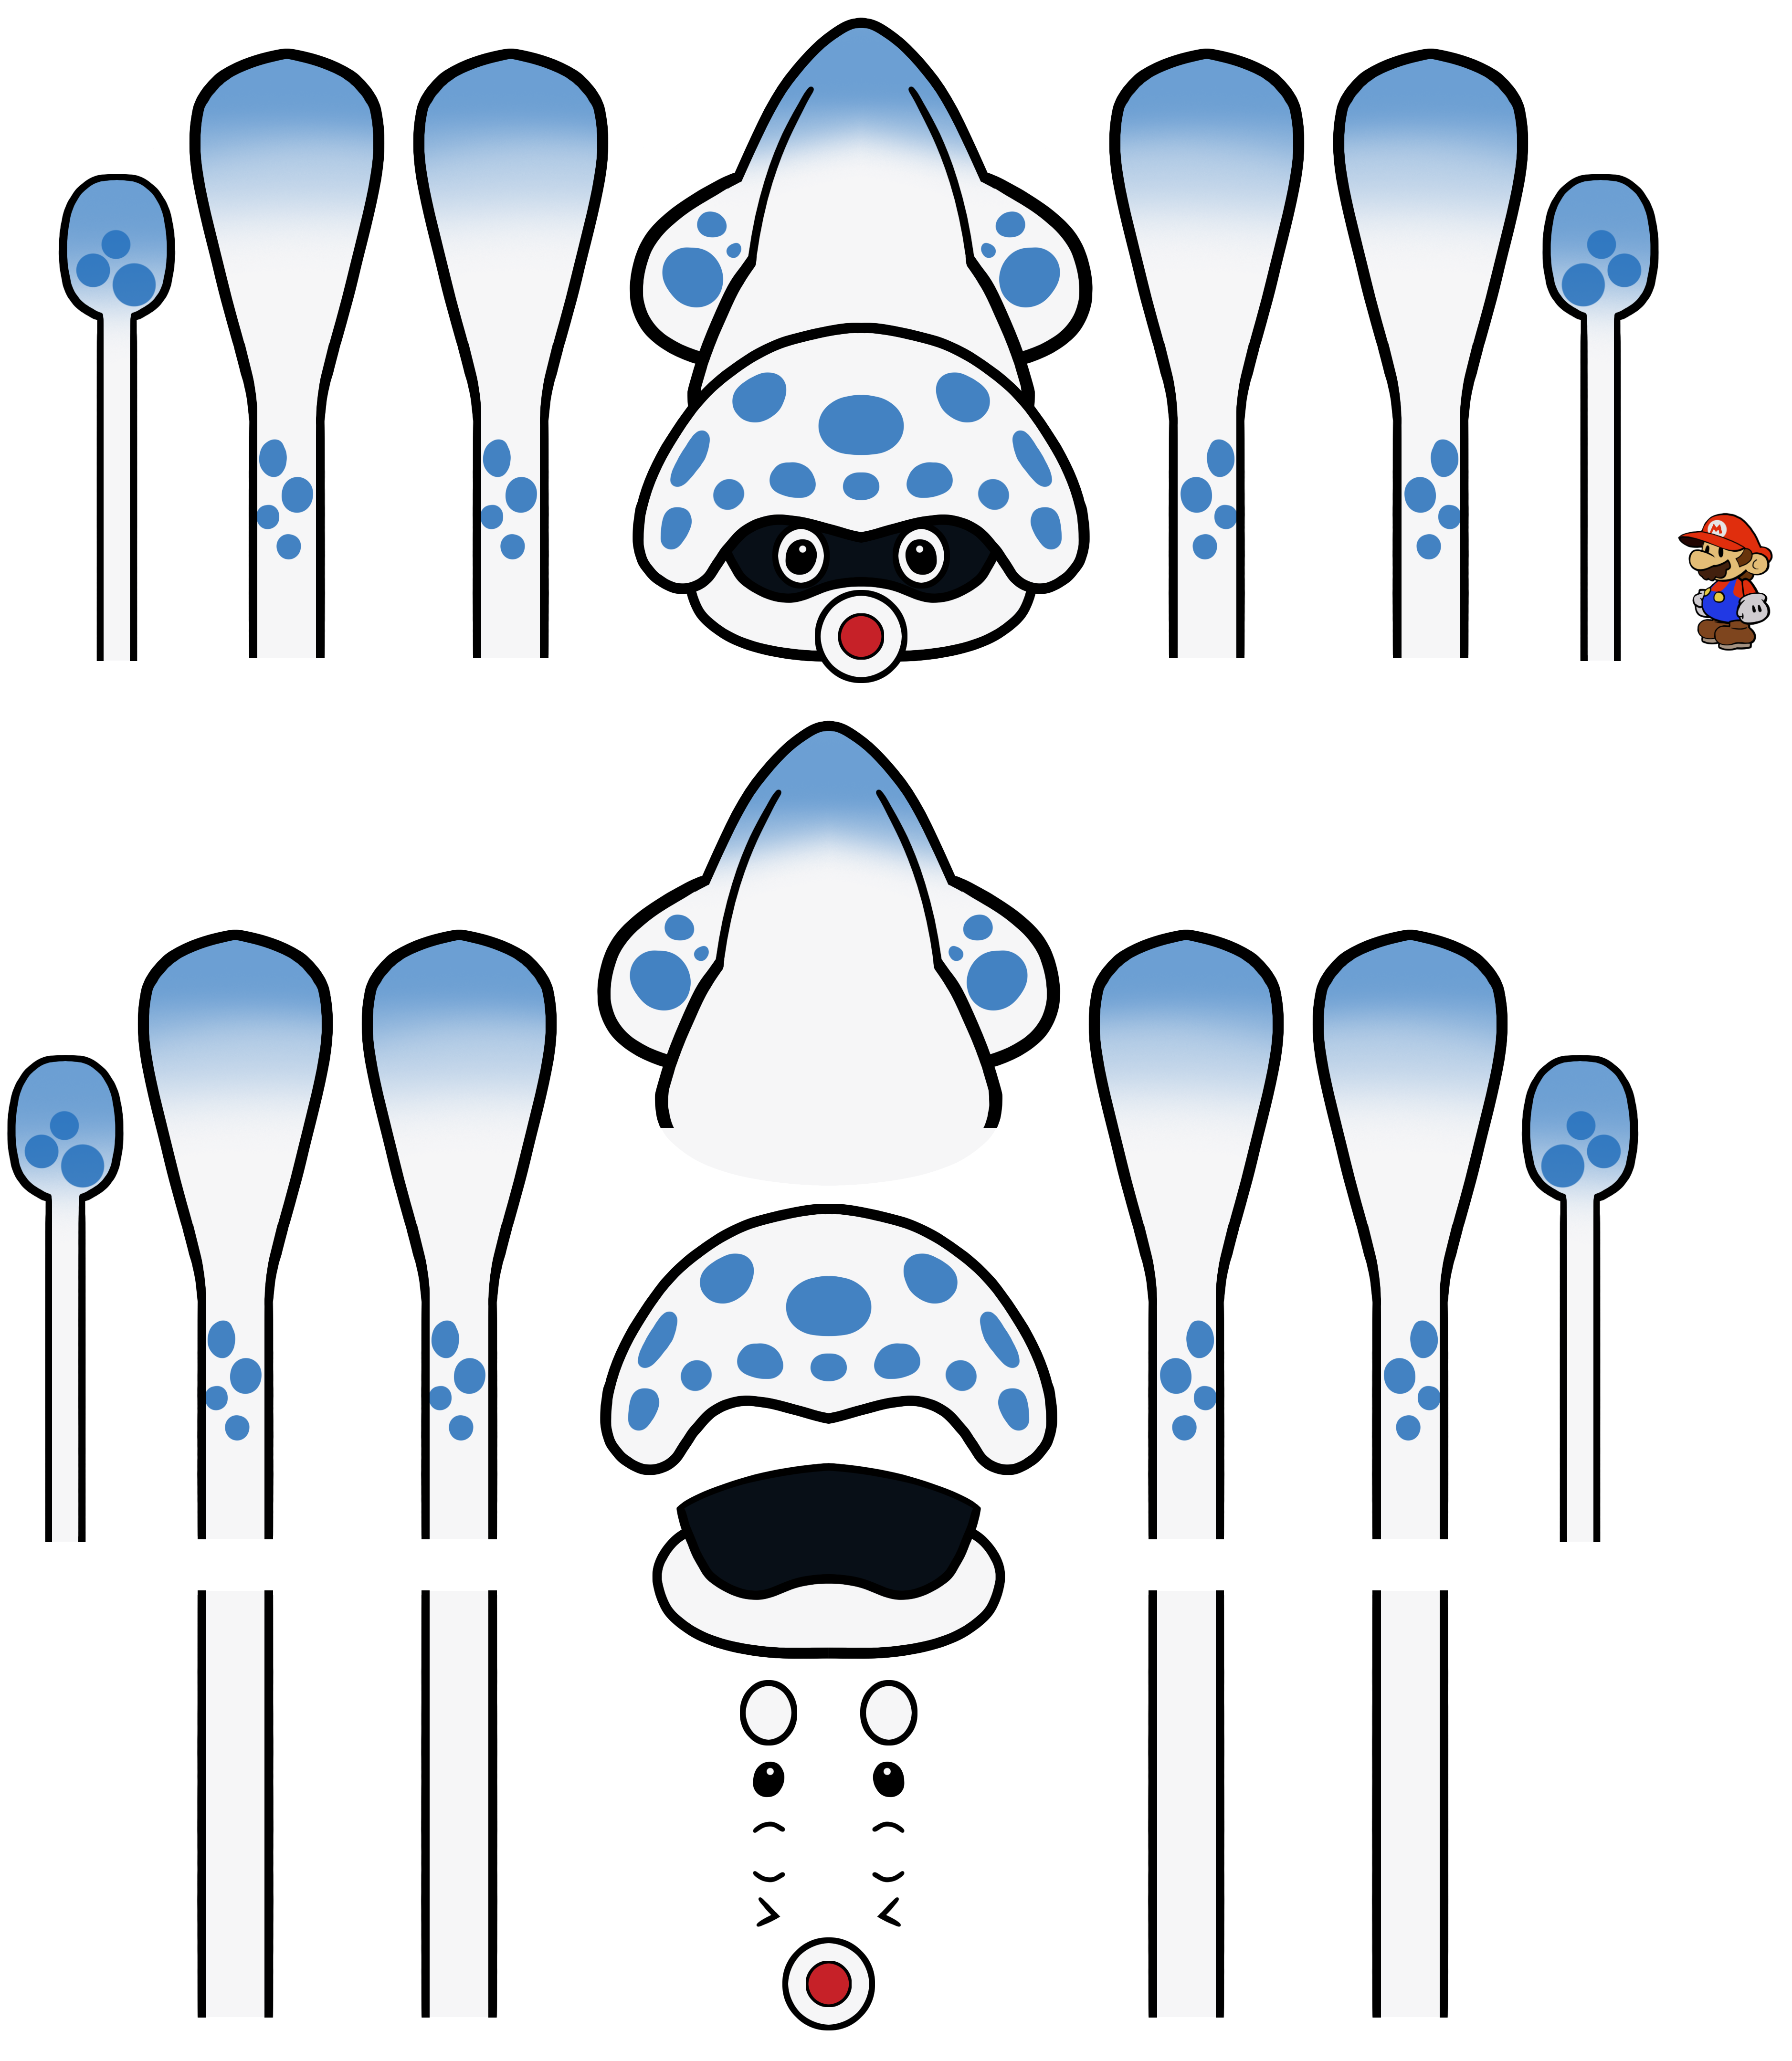 Mario Customs - Gooper Blooper (Paper Mario-Style)